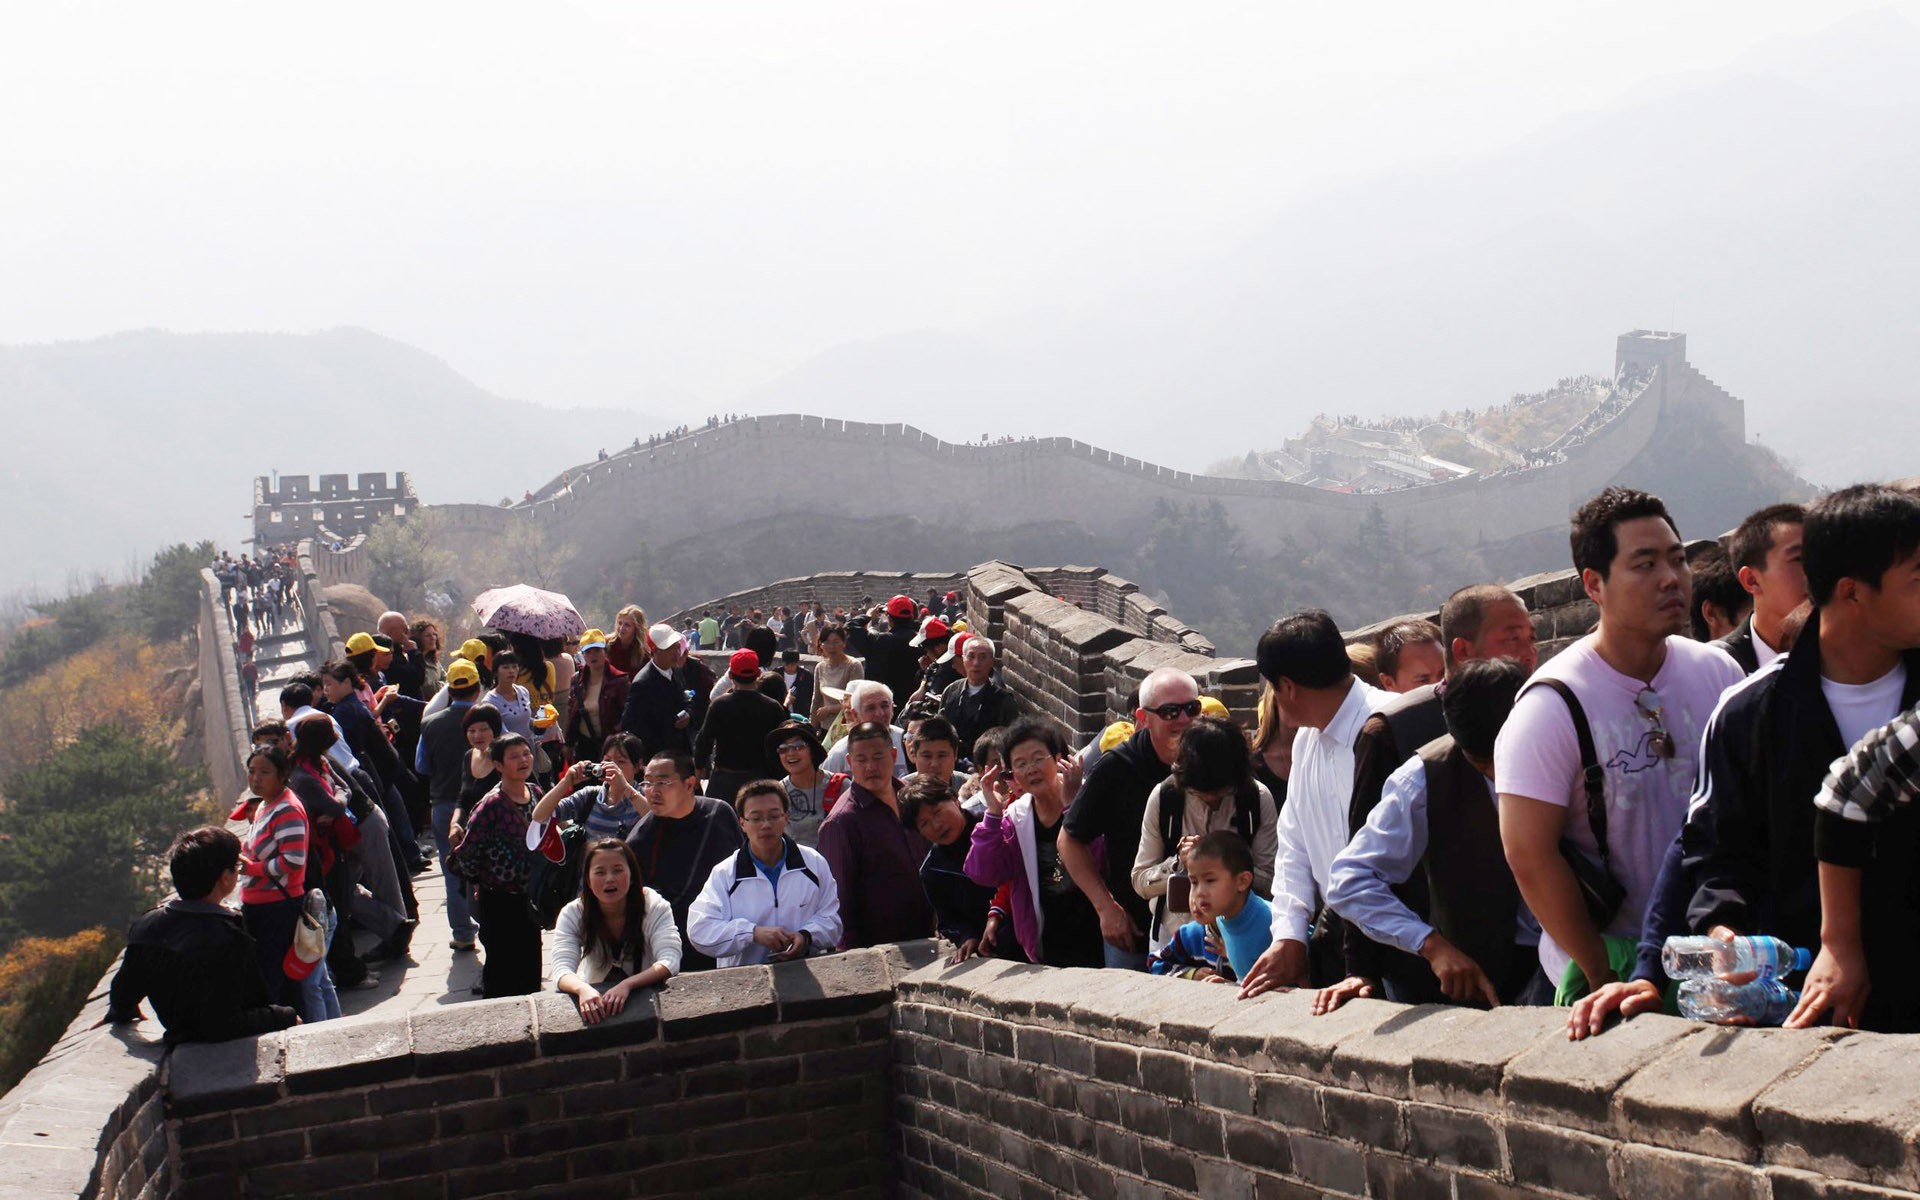 Beijing Tour - Badaling Great Wall (ggc works) #2 - 1920x1200